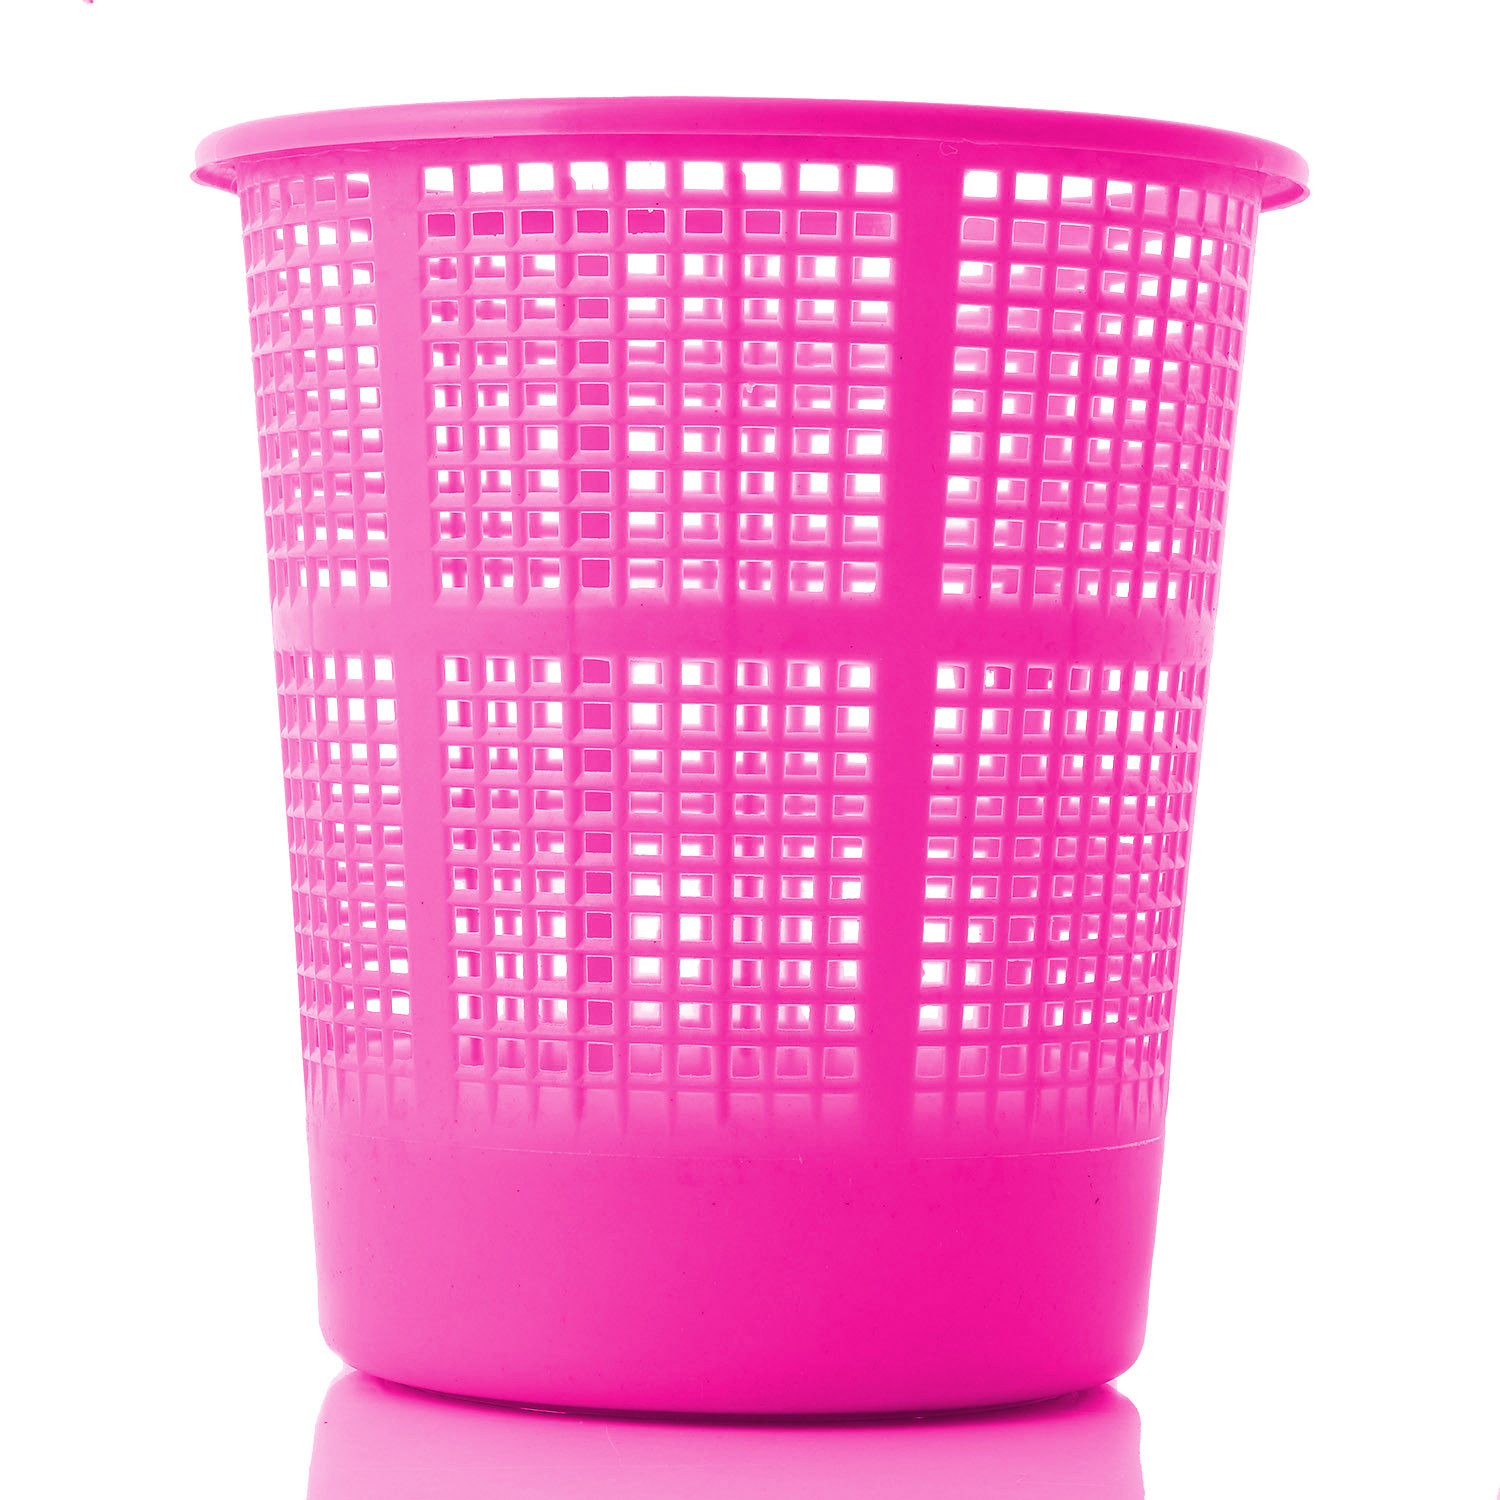 Kuber Industries Plastic Mesh Dustbin Garbage Bin for Office use, School, Bedroom,Kids Room, Home, Multi Purpose,5 Liters (Brown & Pink)-KUBMART260